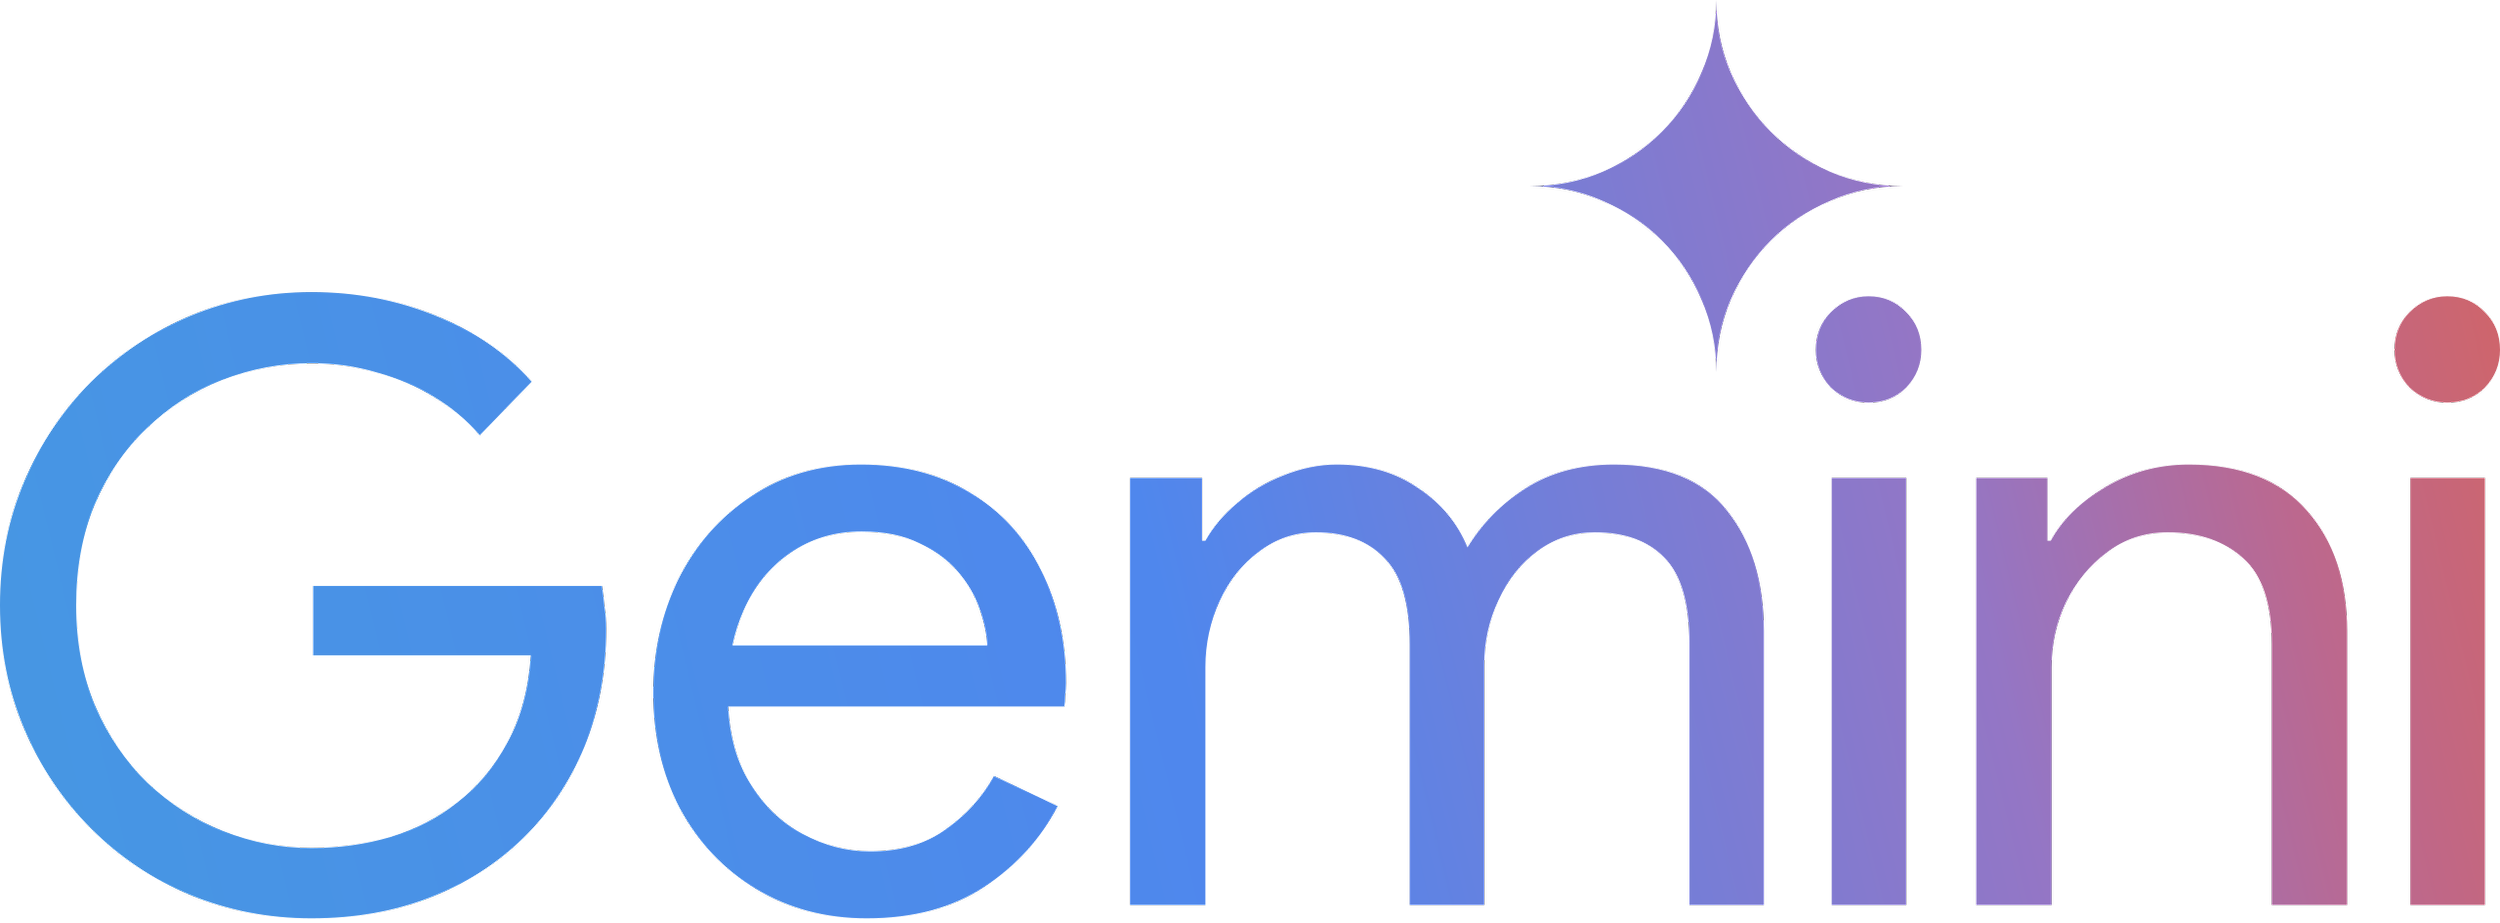 Google_Gemini_logo.svg.png